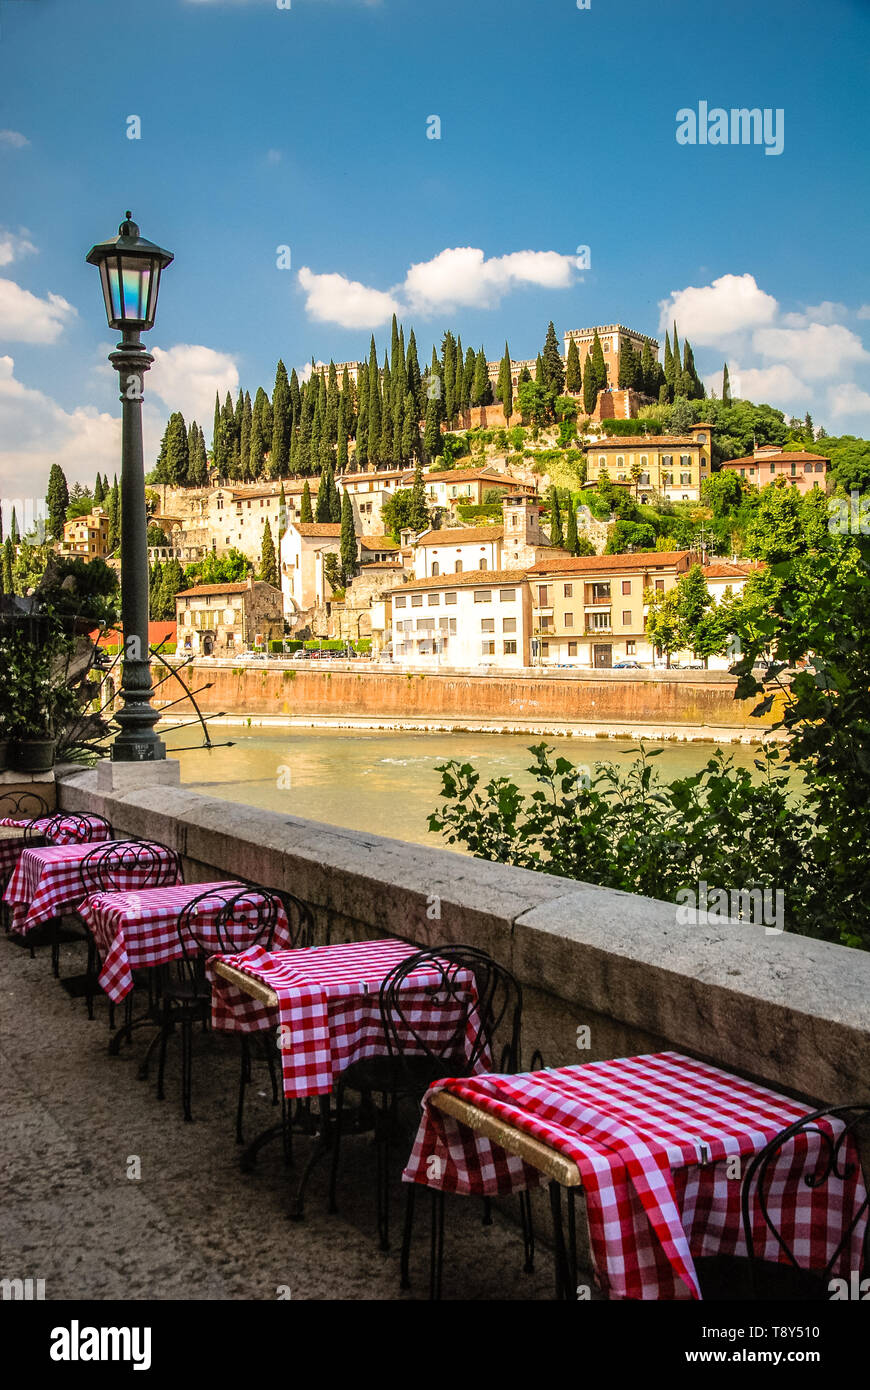 Instalación de mesas de comedor a lo largo del río Adigio en Verona, Italia completa con típico italiano comprueba los manteles rojos y blancos. Foto de stock